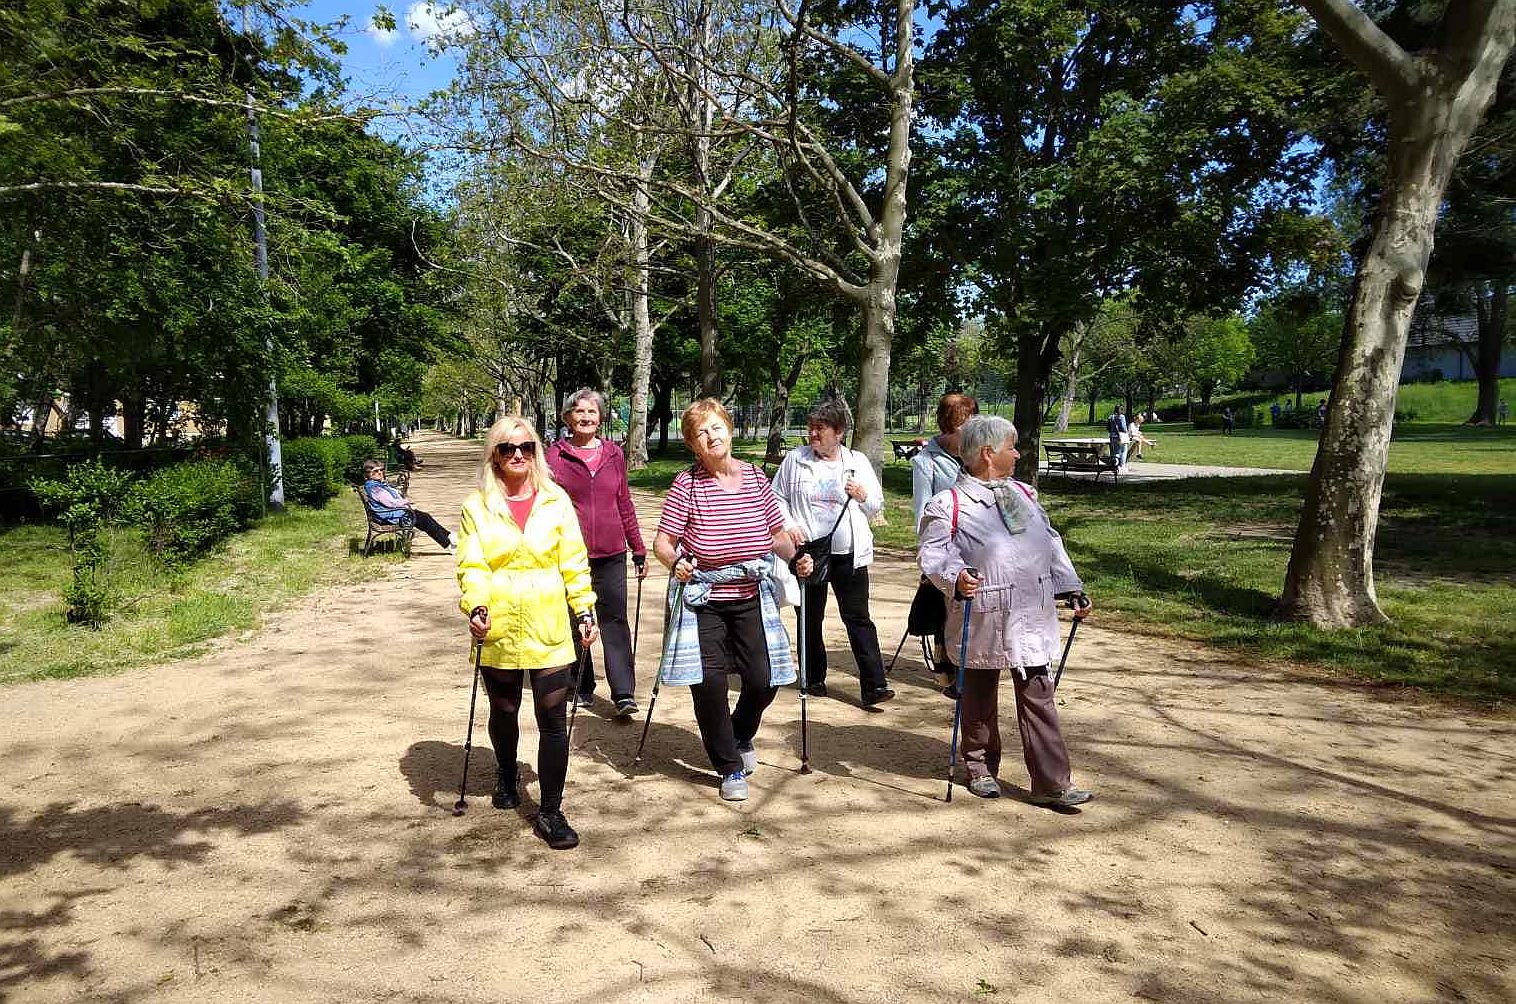 Ingyenes Nordic Walking foglalkozások október 30-ig Székesfehérváron